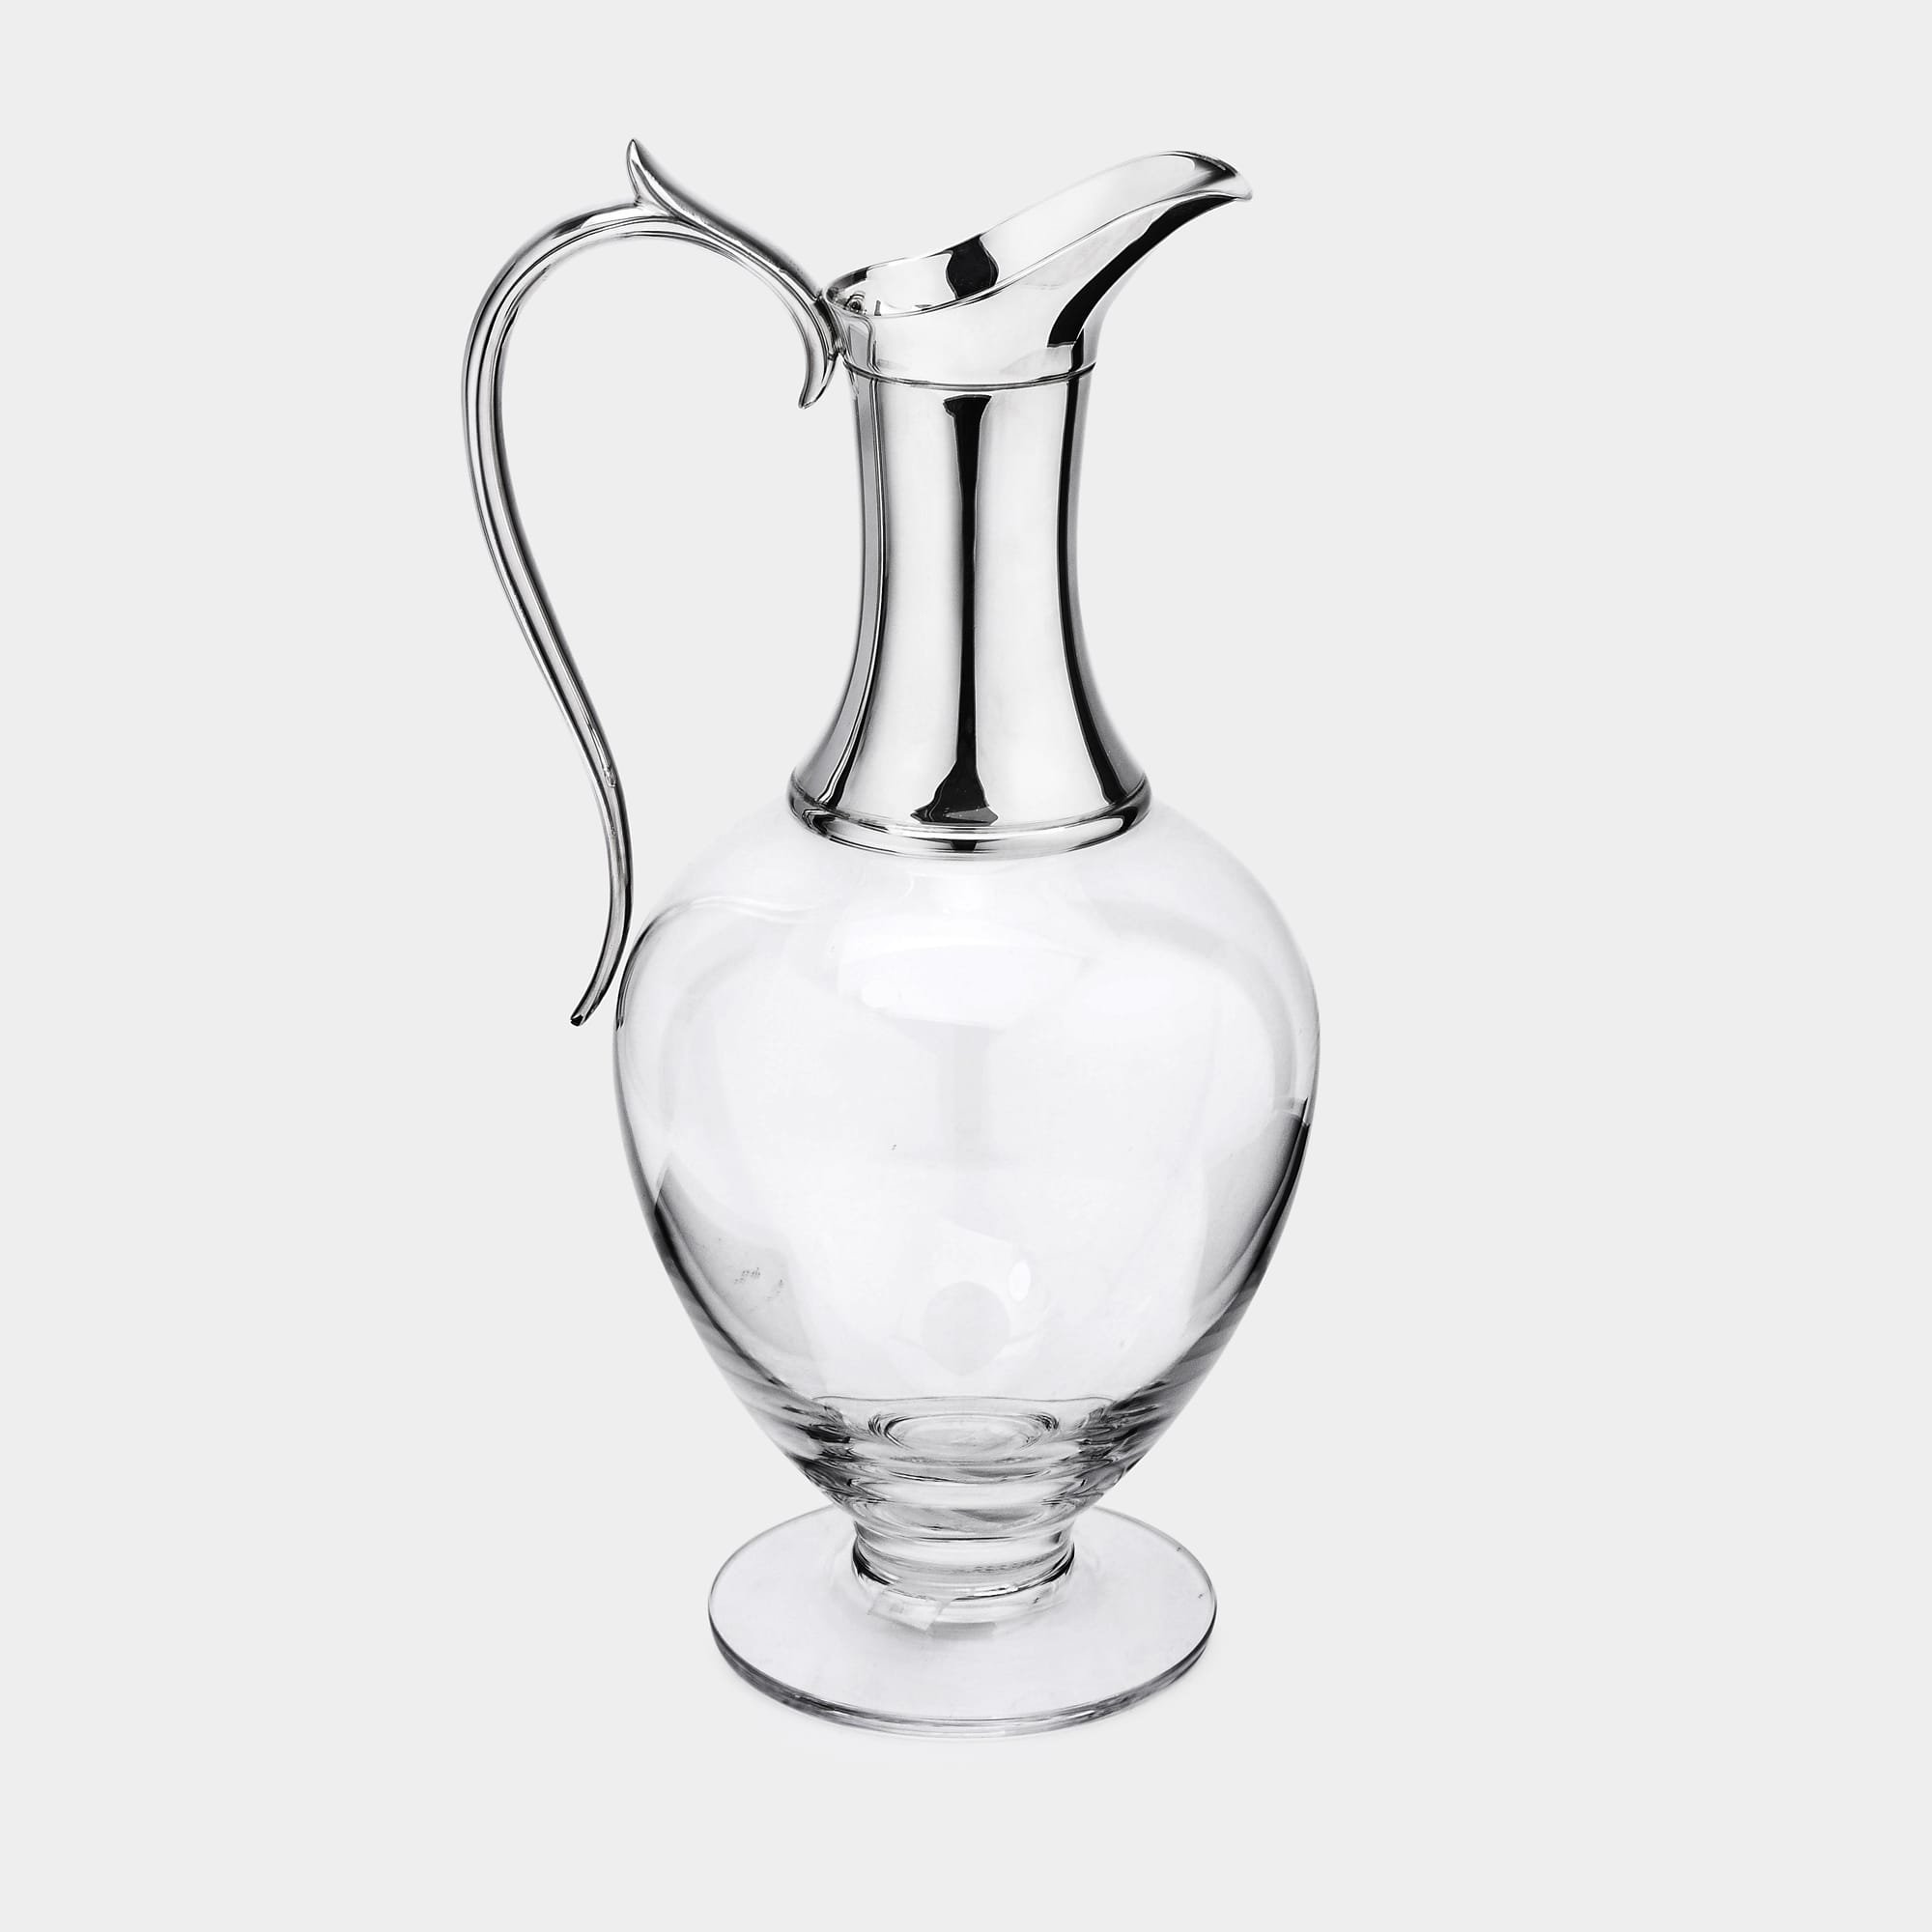 Silver & Dartington glass wine jug